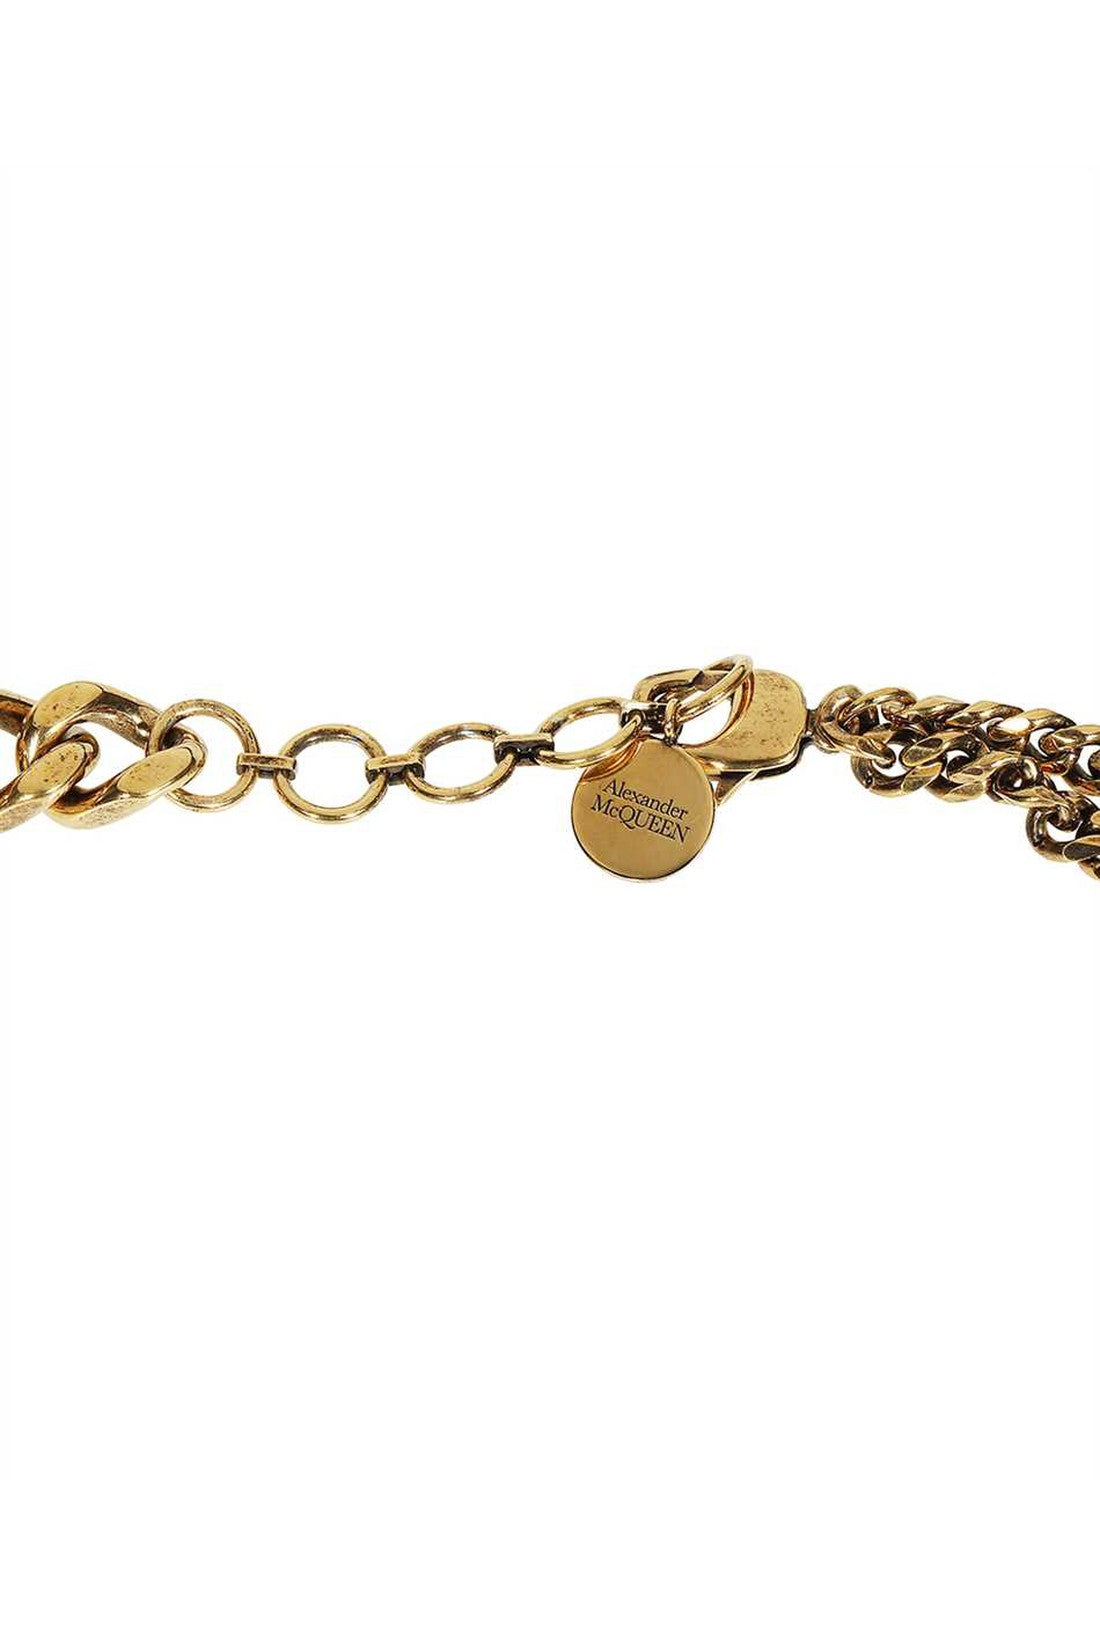 Pendant chain necklace